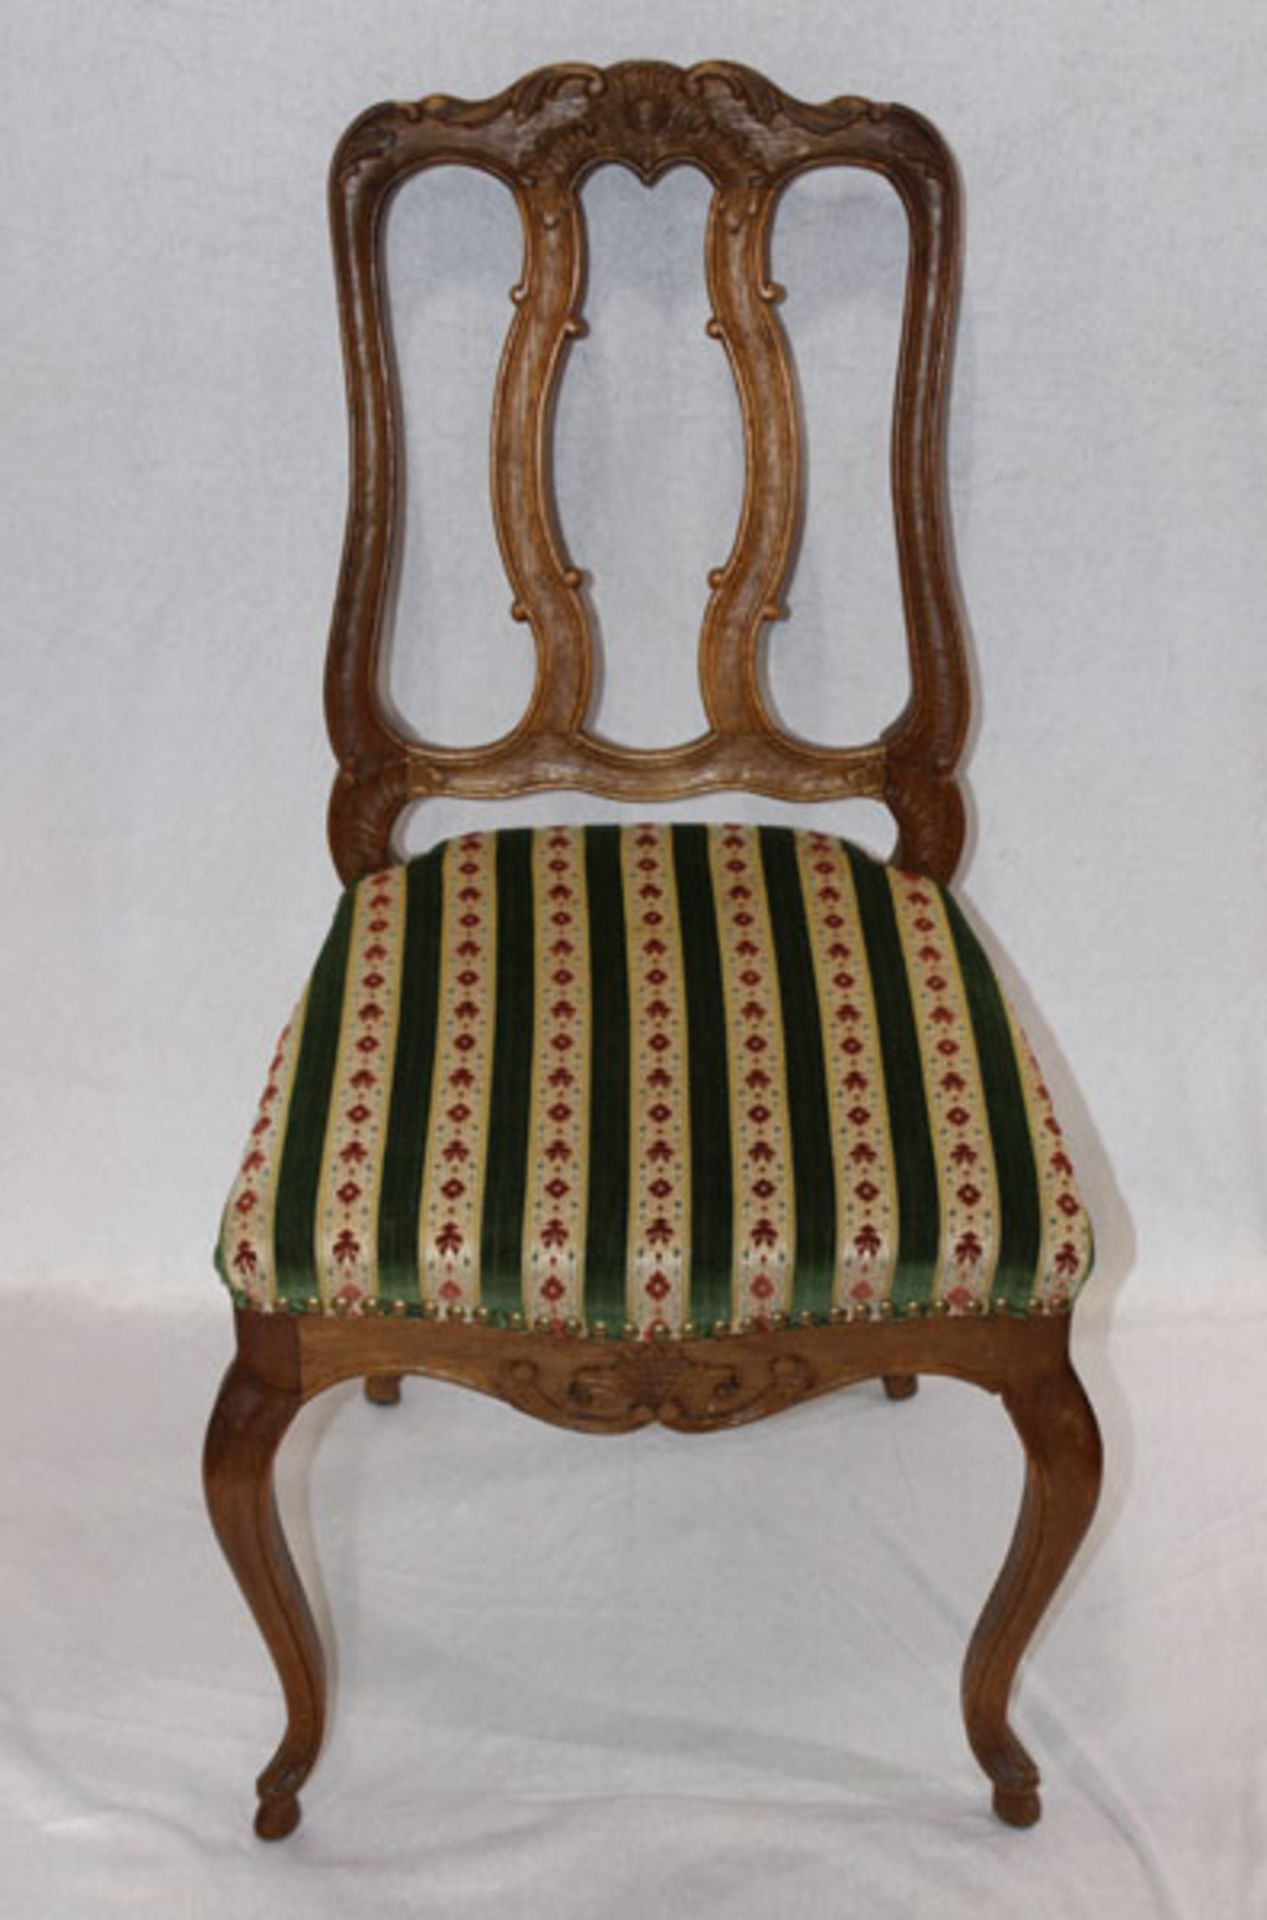 4 Holzstühle auf geschwungenen Beinen, Lehne teils beschnitzt, Sitz gepolstert und grün/beige